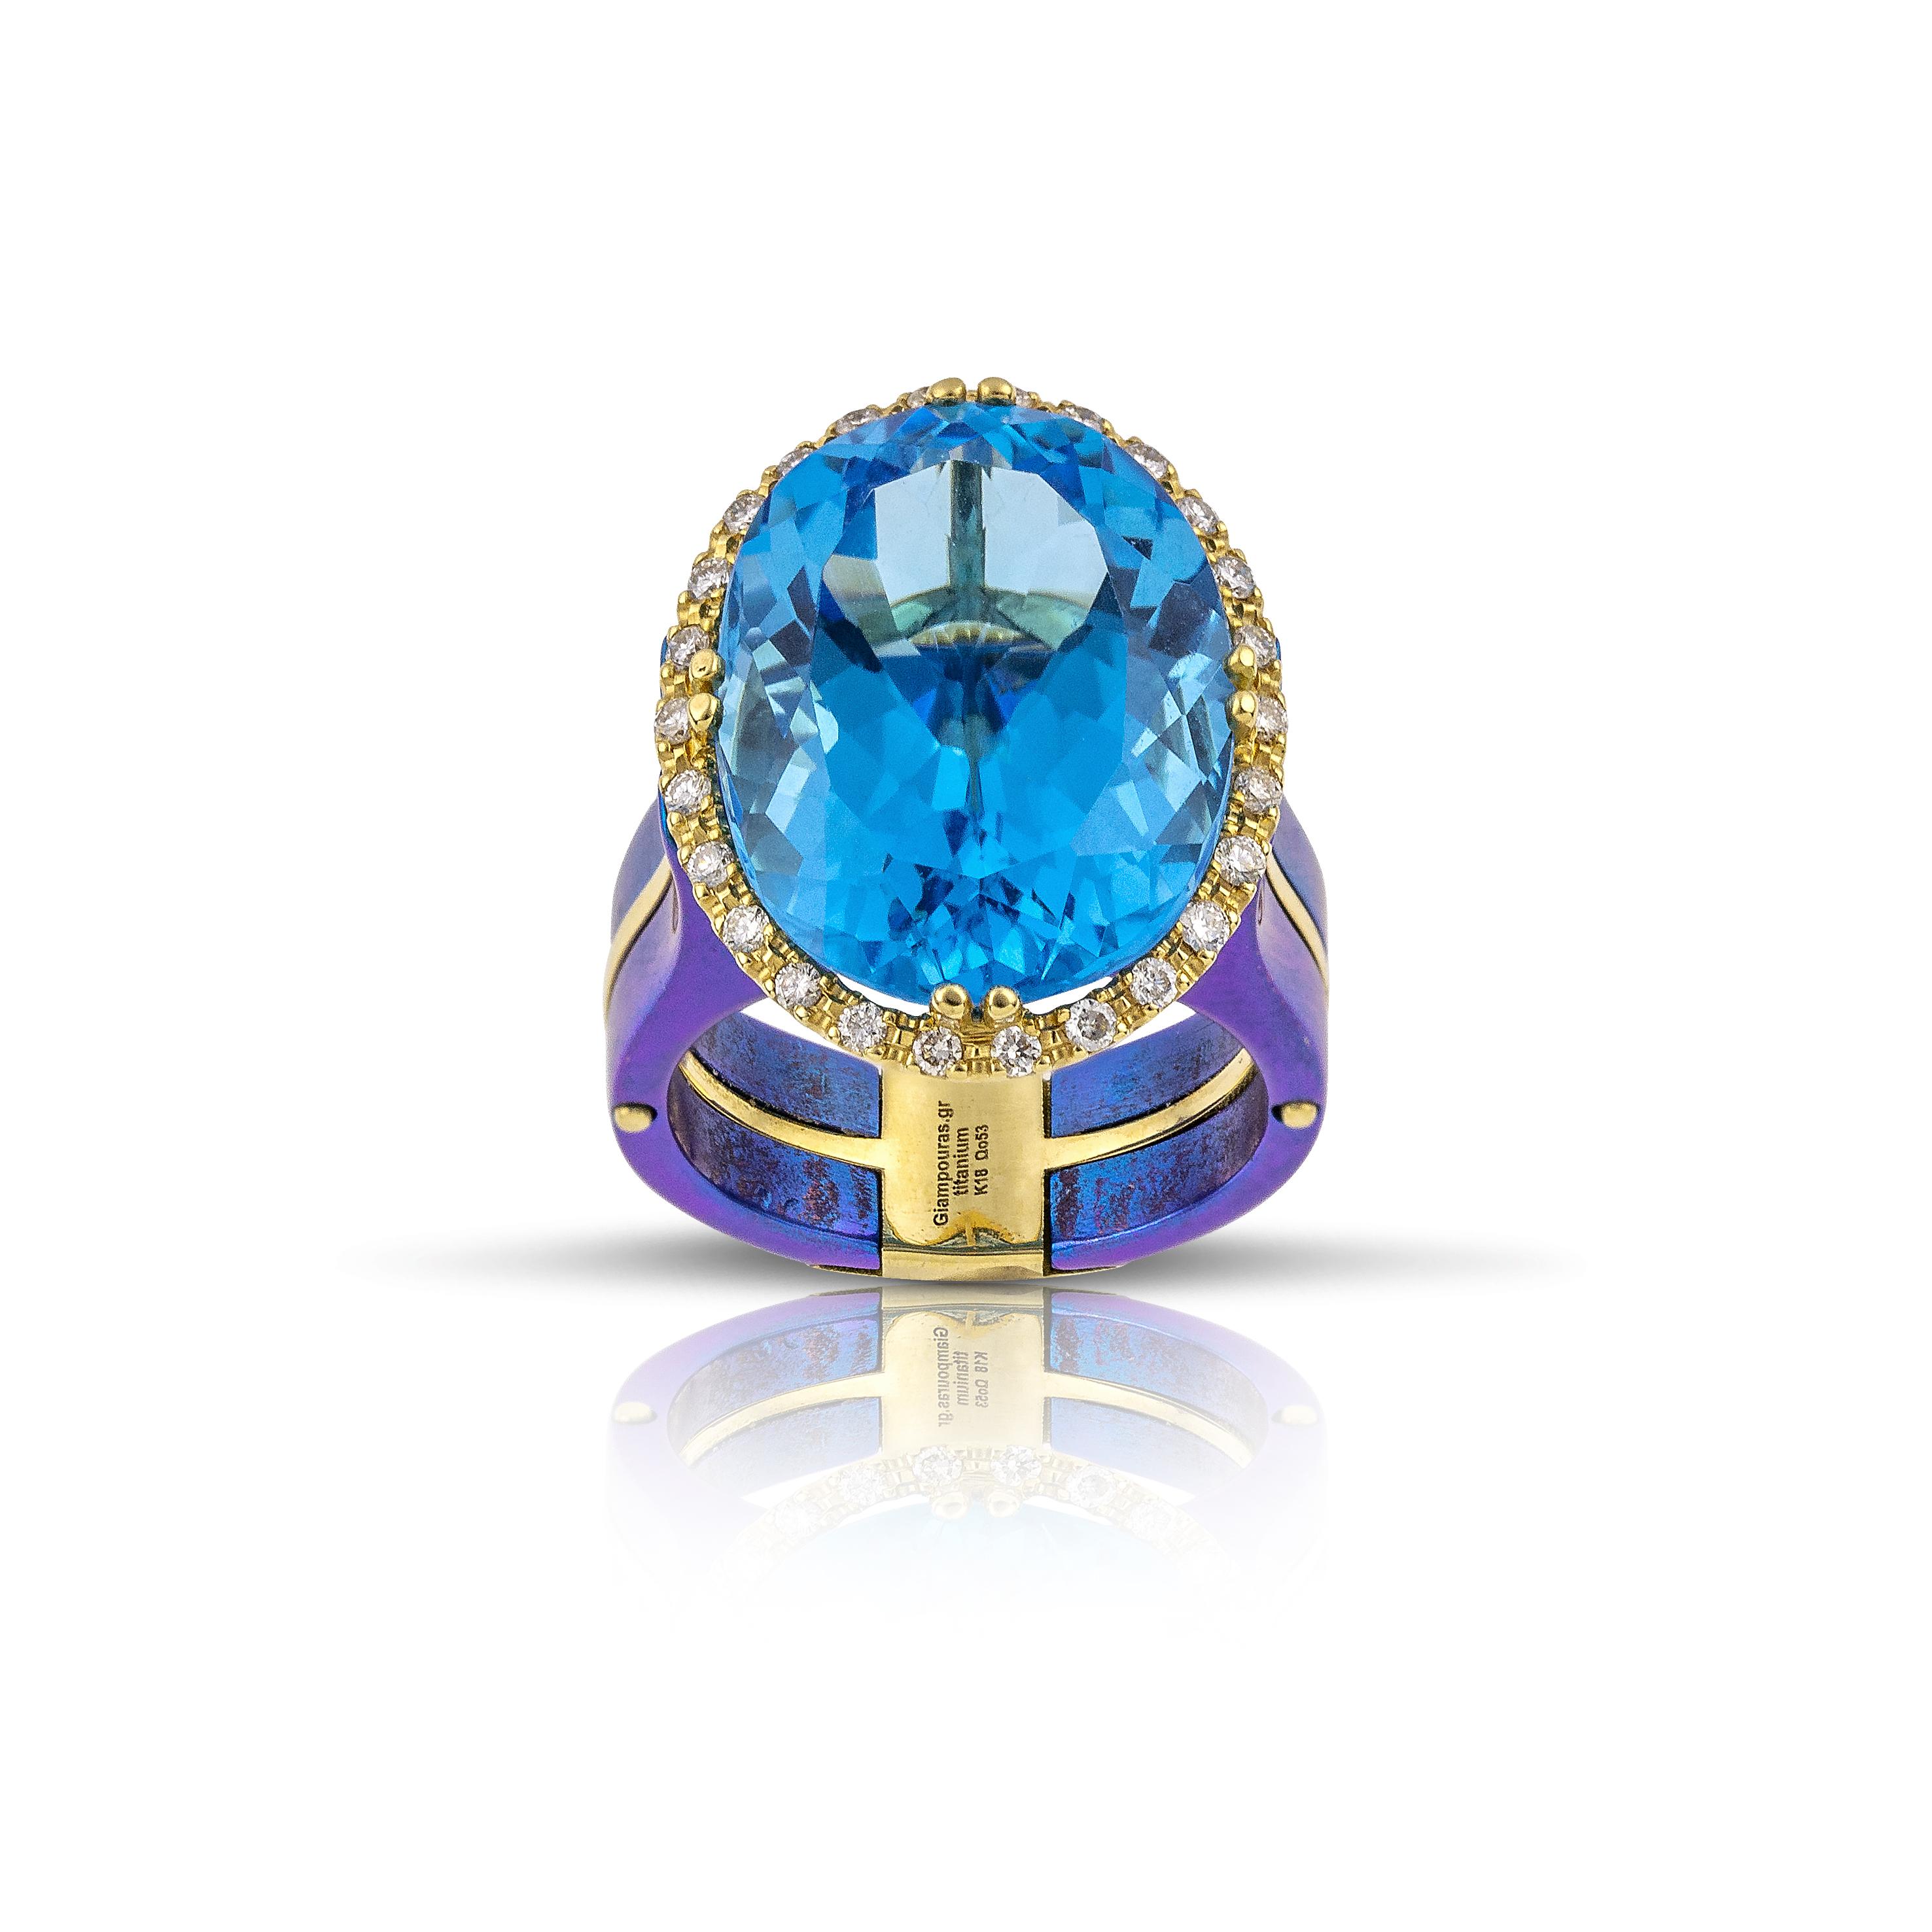 Blauer ovaler Topas-Ring von Vasilis Giampouras in der Second Petale Gallery
Unser blauer Ring Royal Elegance Titanium, in dessen Zentrum ein bezaubernder ovaler Blautopas liegt, strahlt einen bezaubernden azurblauen Farbton aus, der die Sinne